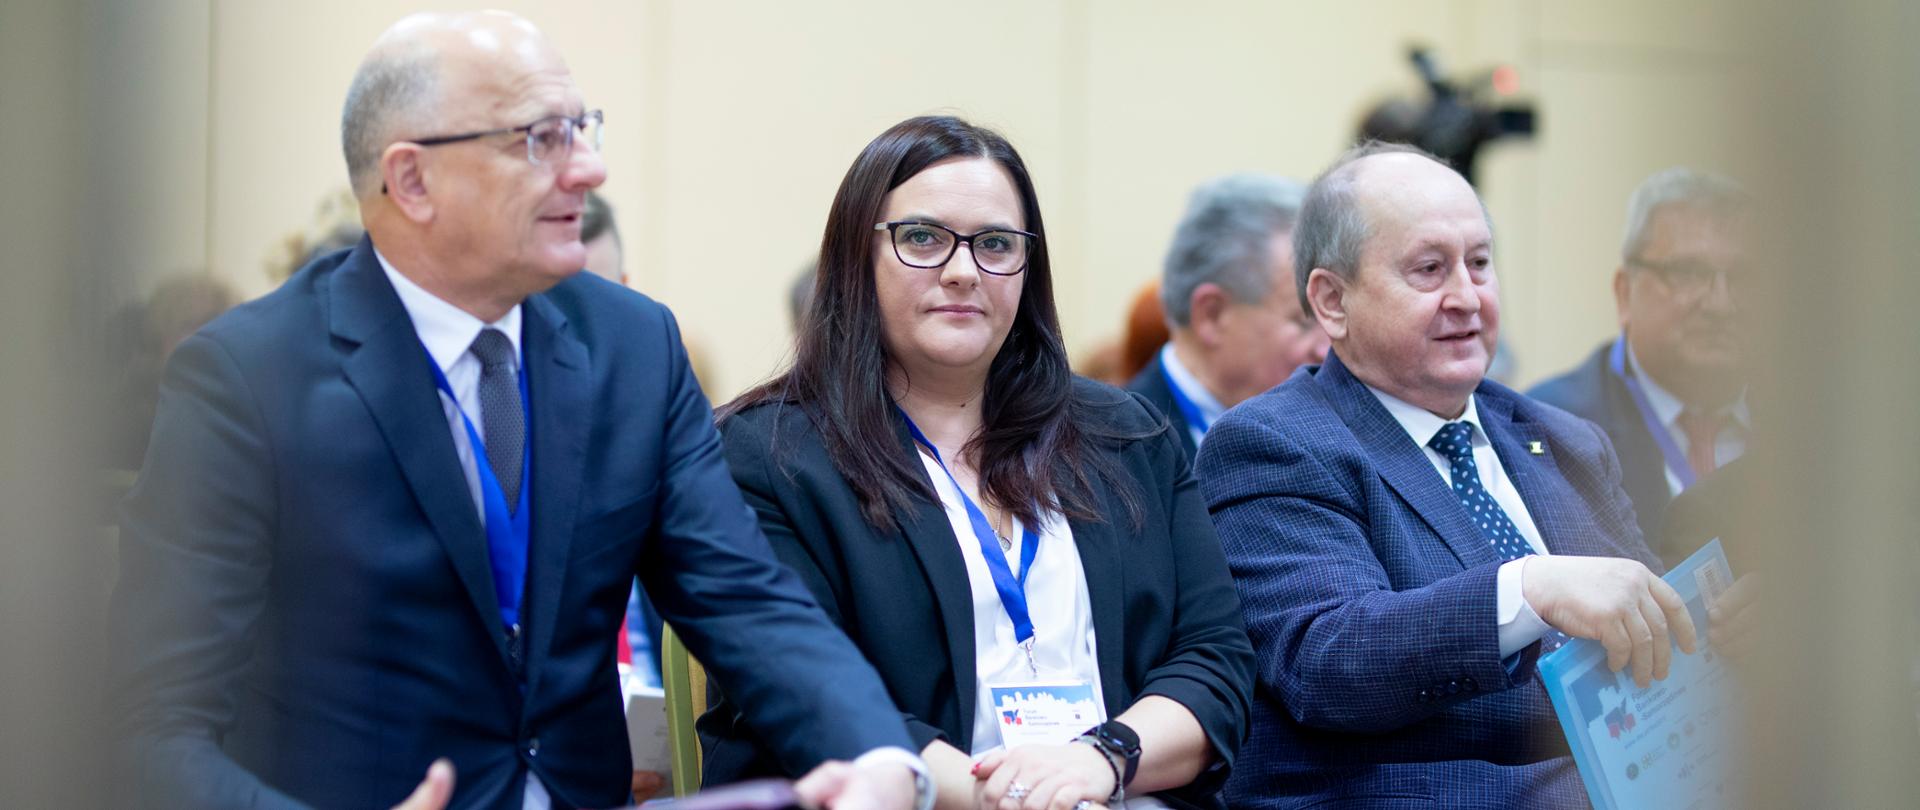 Trzy osoby - dwóch mężczyzn i kobieta - siedzą na krzesłach ustawionych w rzędzie. Pośrodku minister Małgorzata Jarosińska-Jedynak.